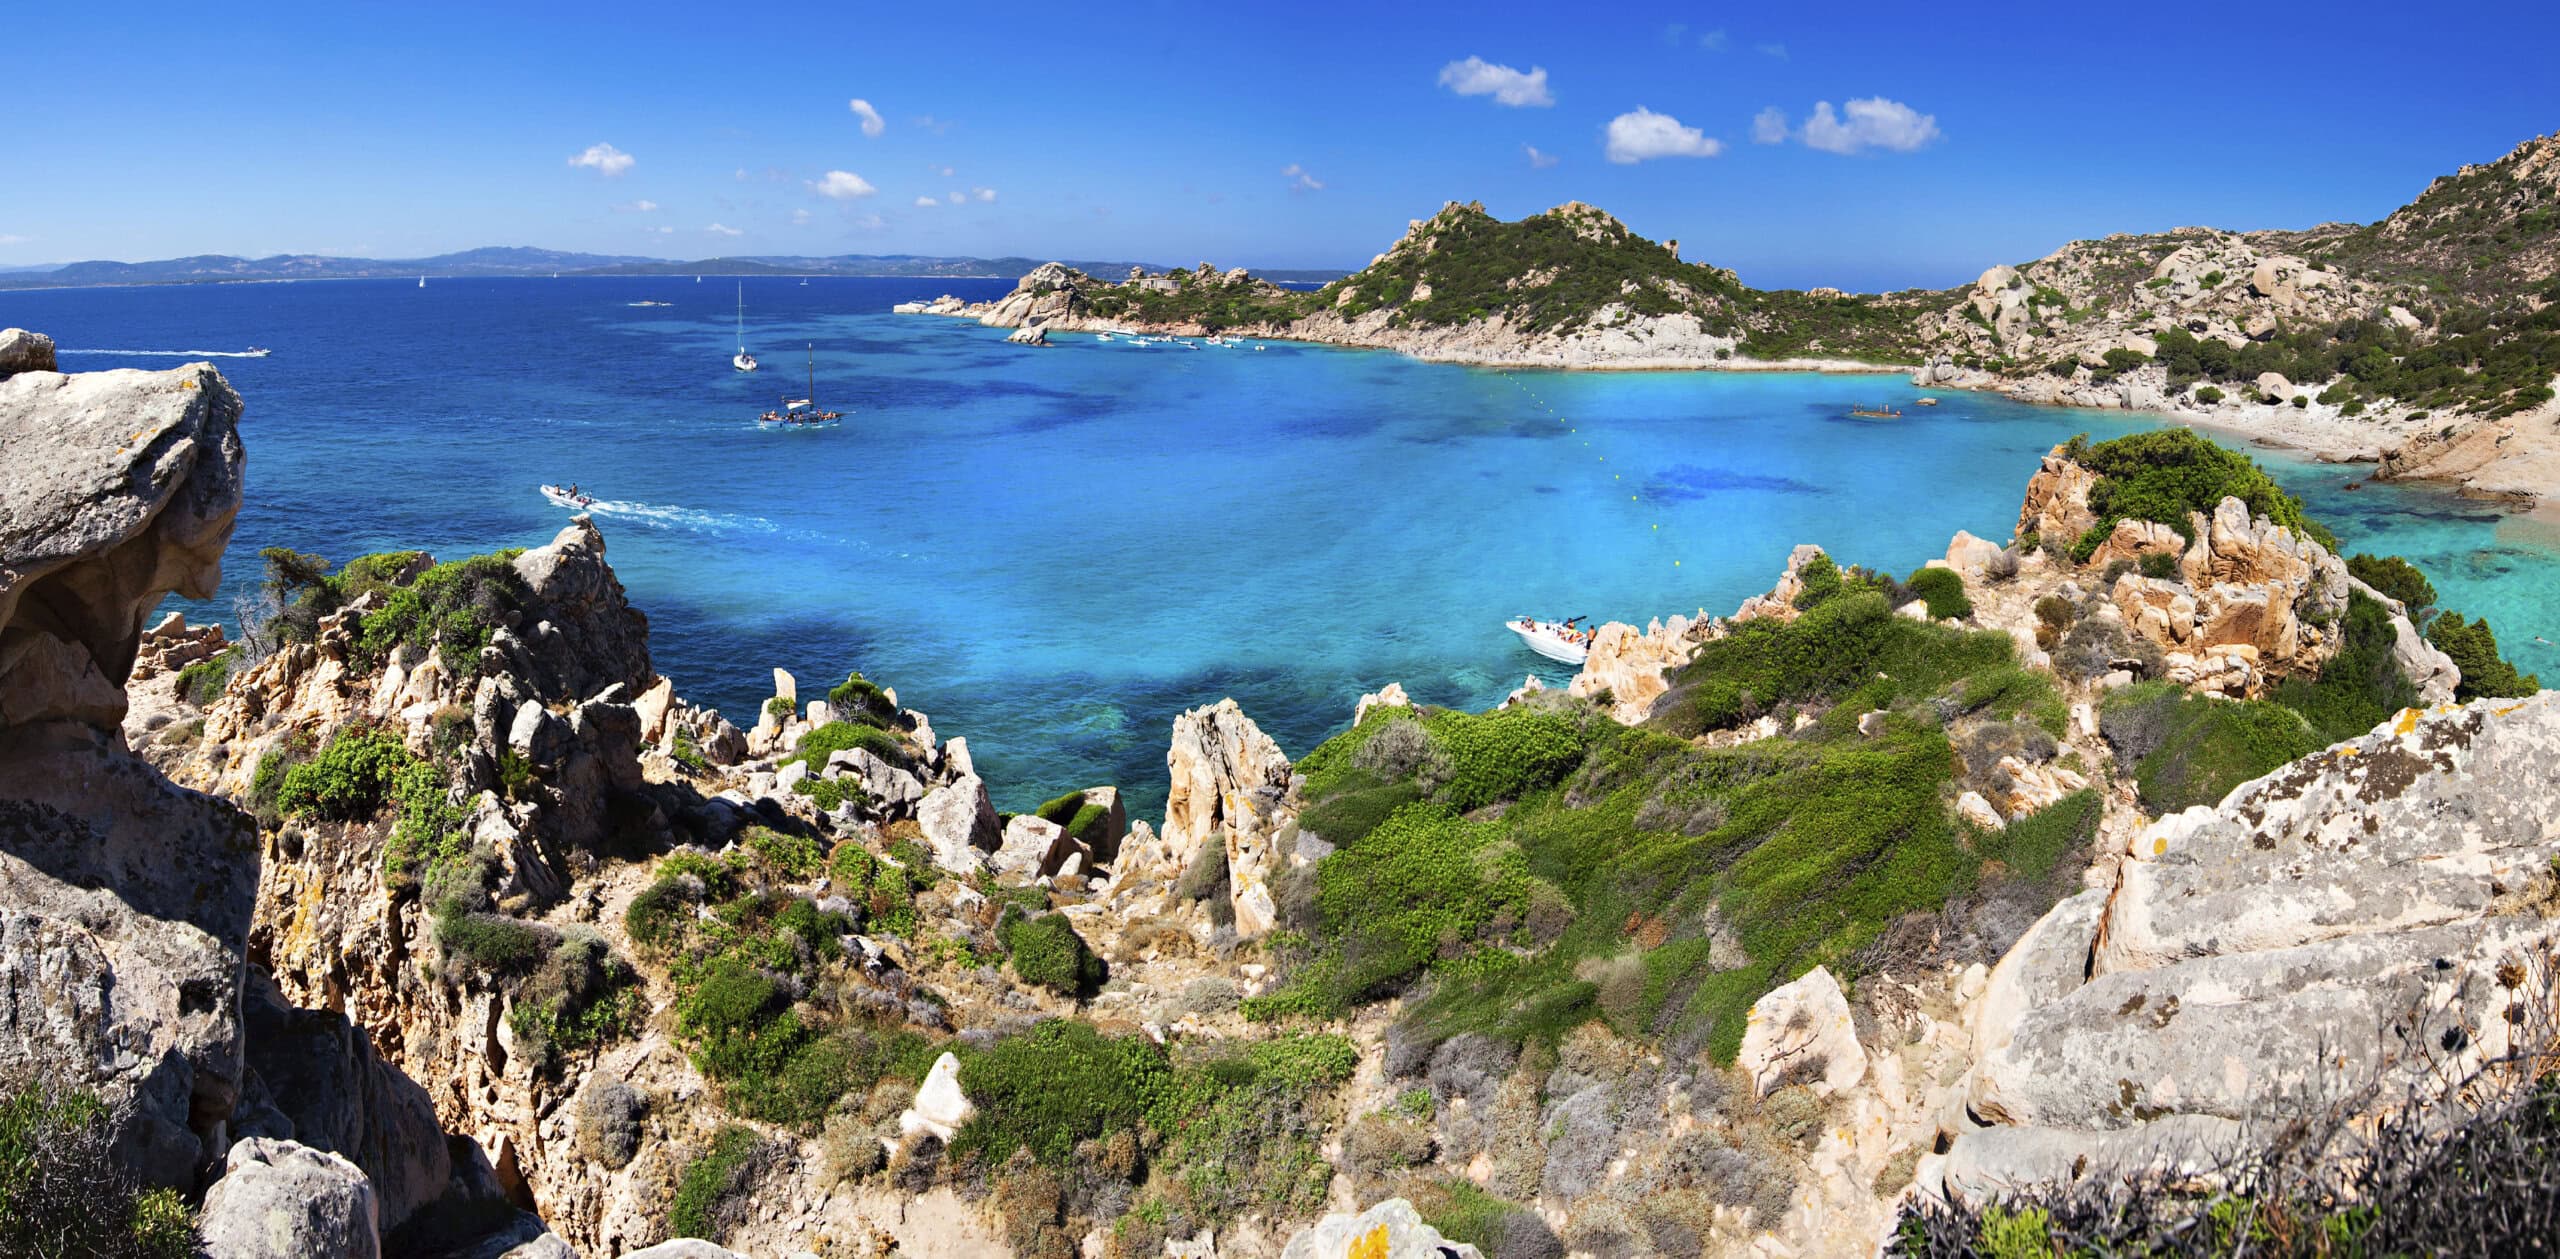 The Beautiful Italian Island Sardinia in Mediterranean Sea Stock